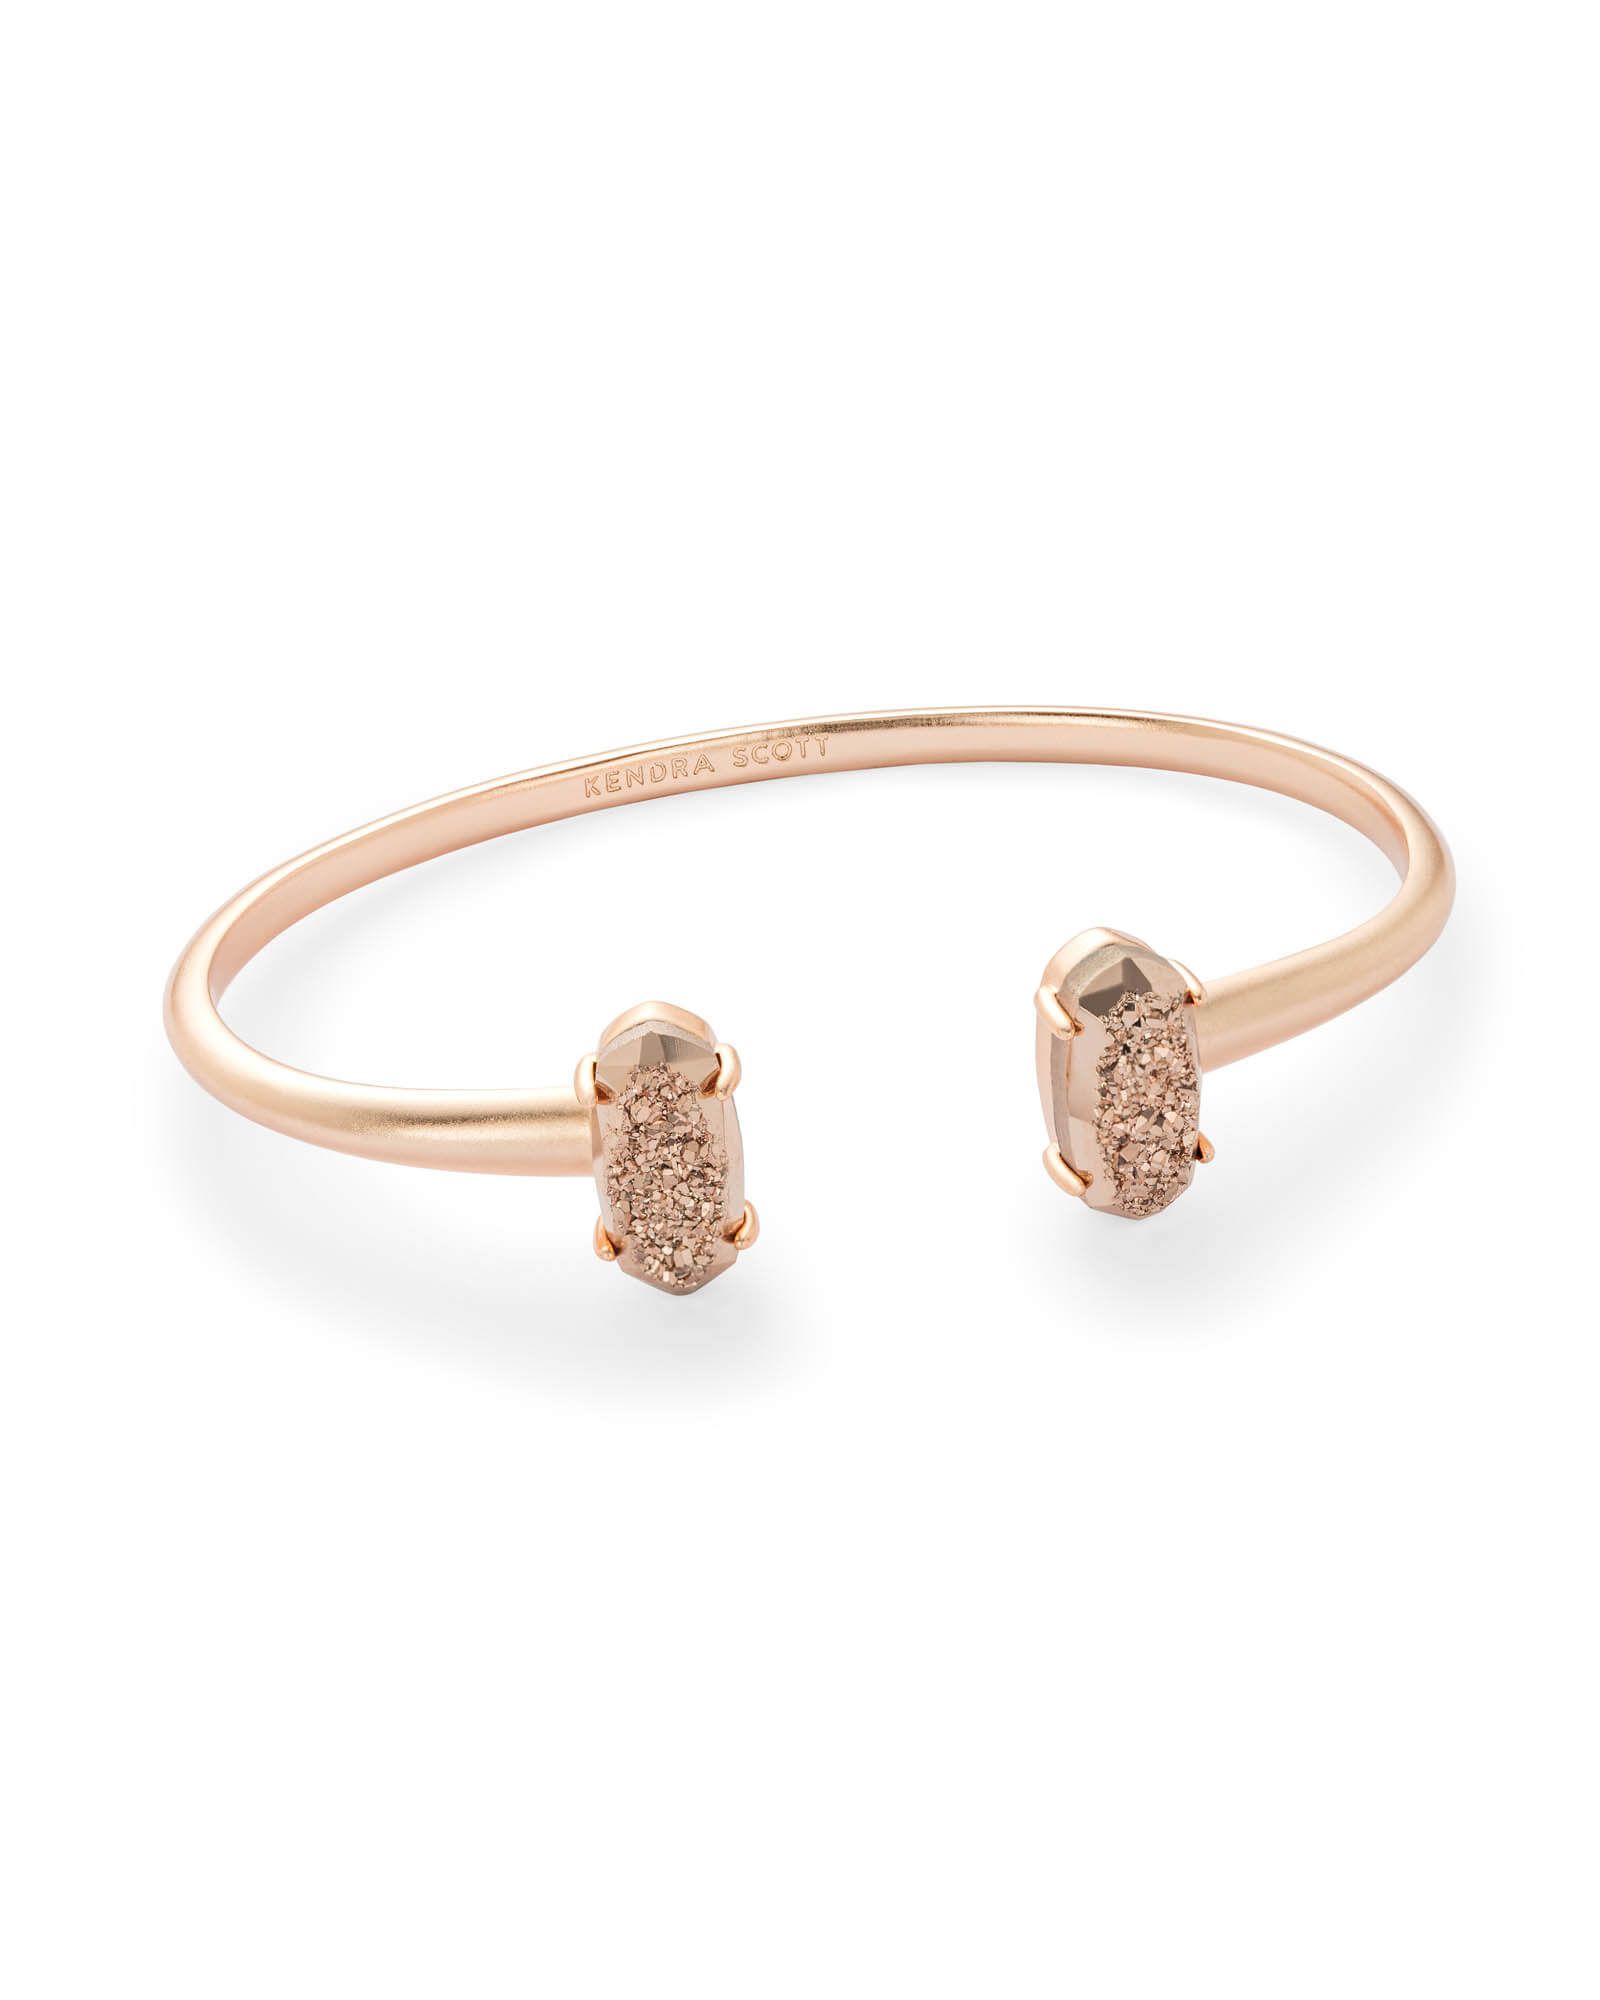 Edie Rose Gold Cuff Bracelet in Rose Gold Drusy | Kendra Scott | Kendra Scott